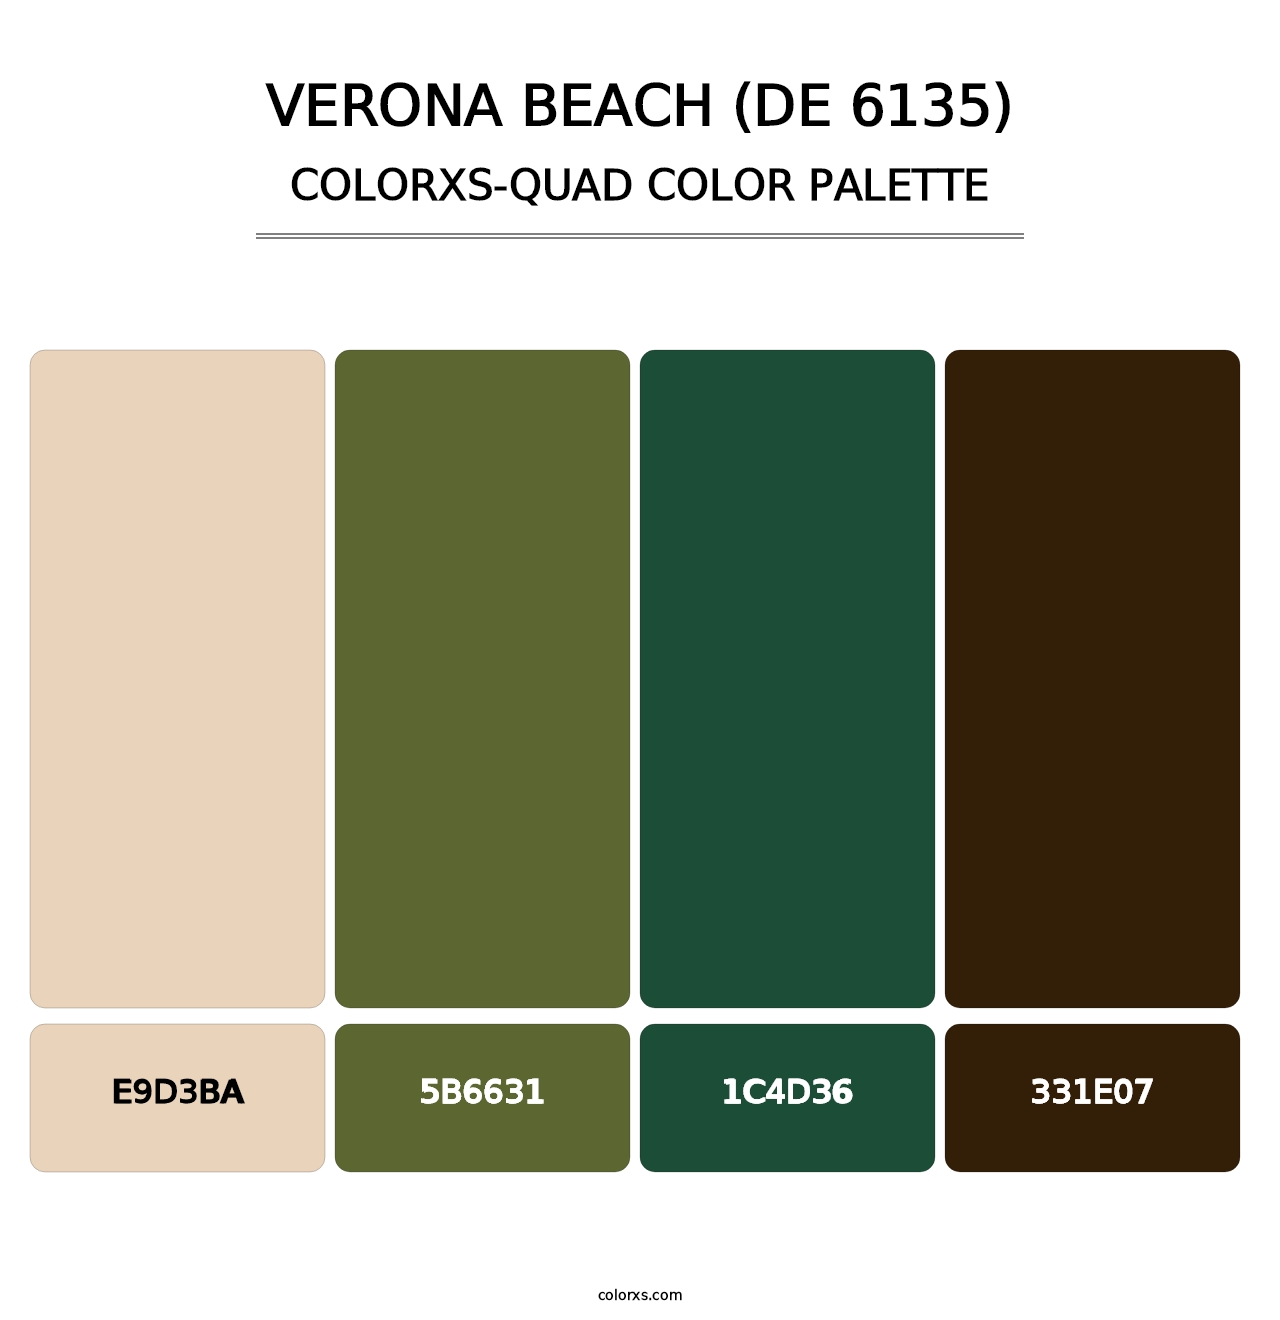 Verona Beach (DE 6135) - Colorxs Quad Palette